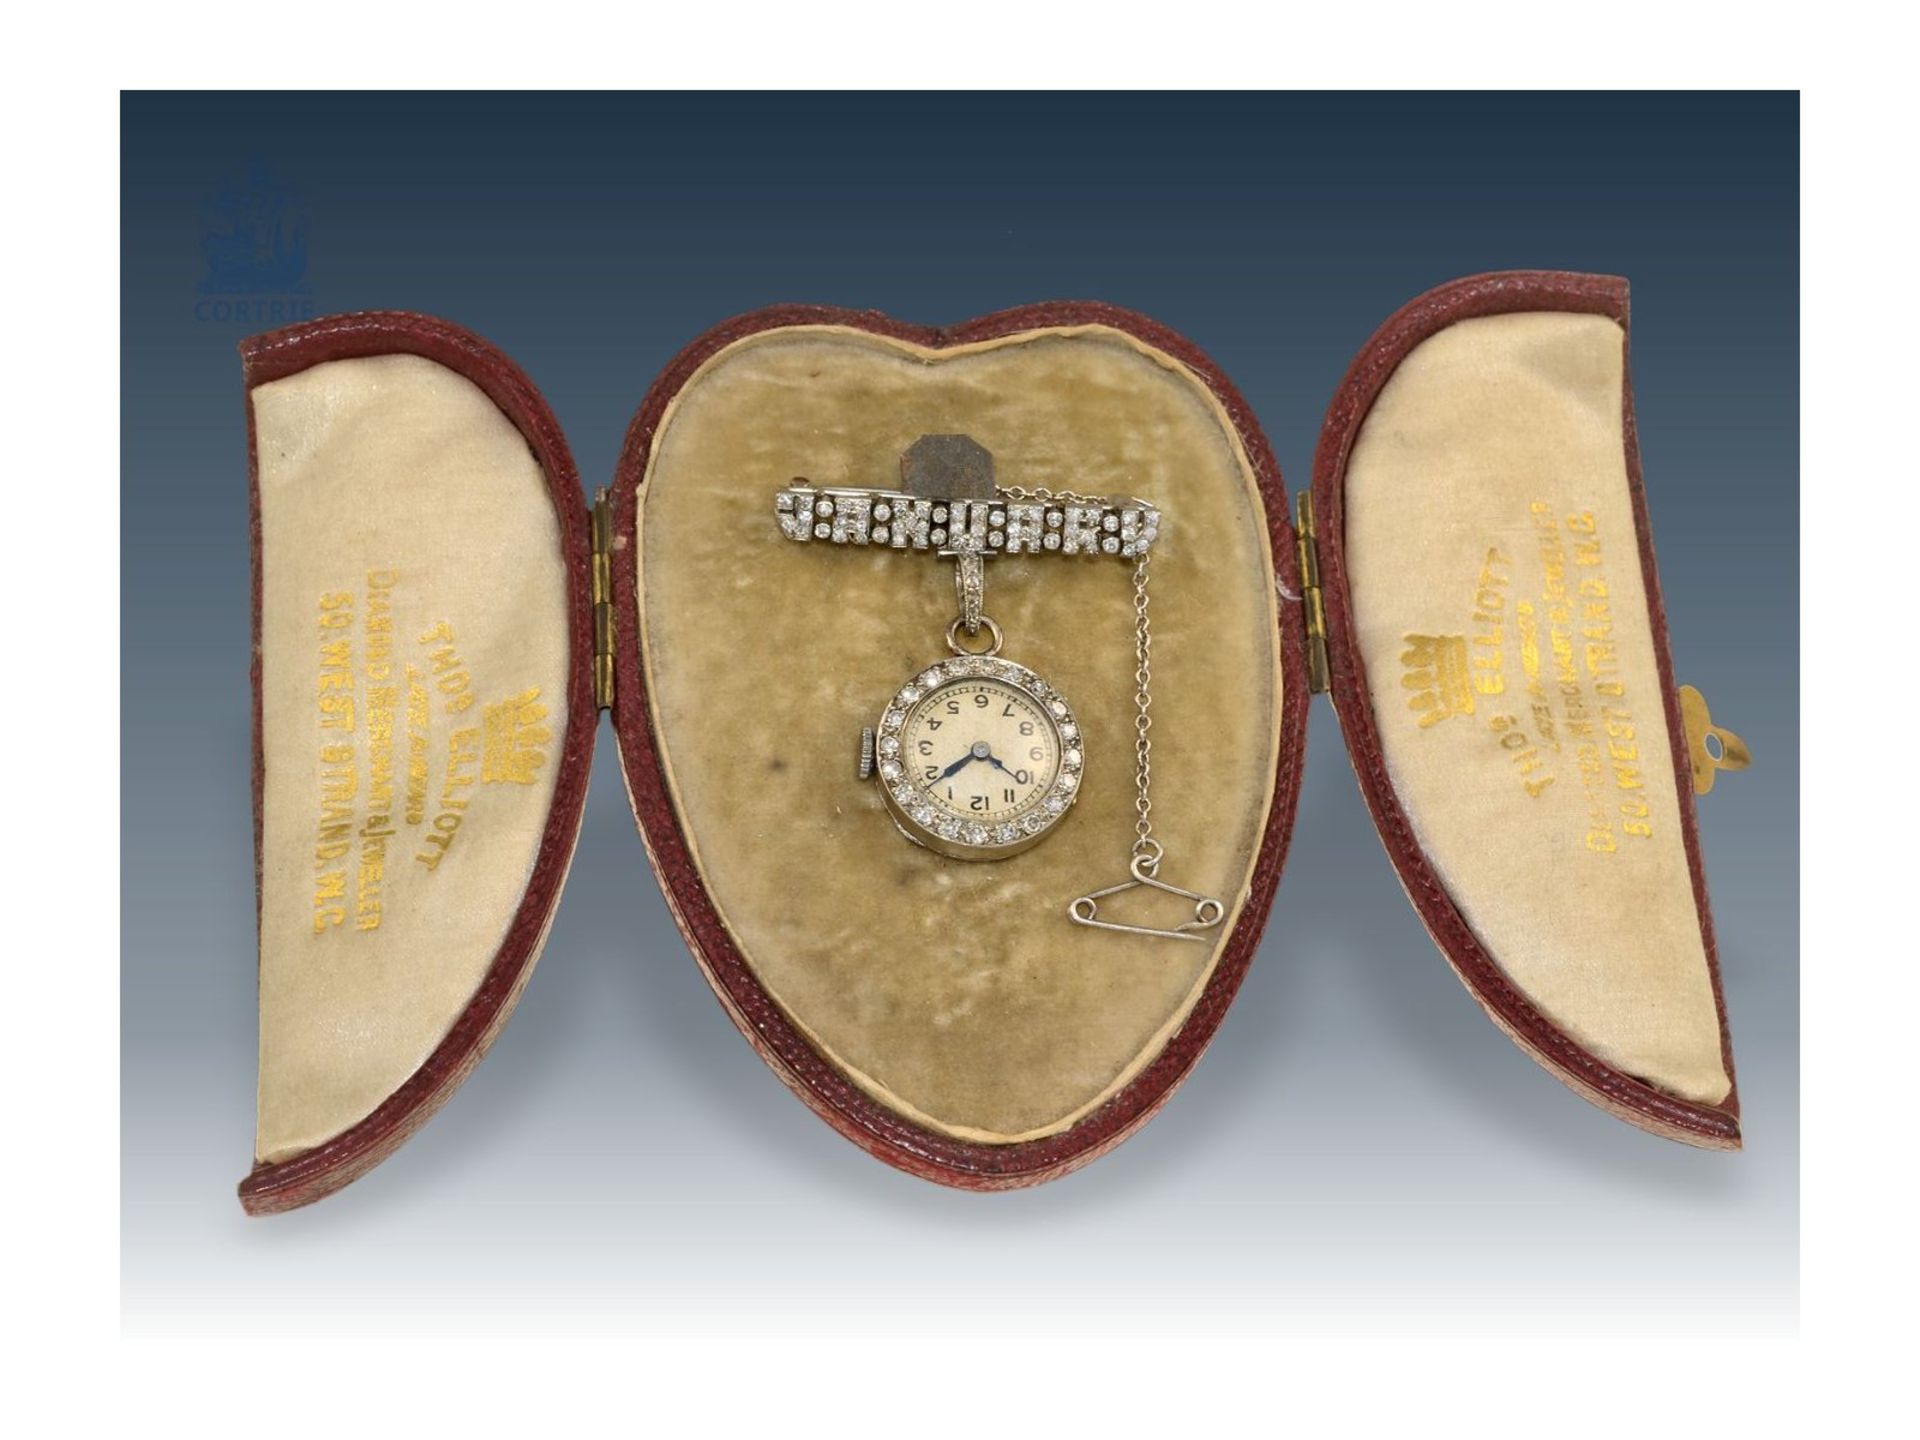 Anhängeuhr/Broschenuhr: seltene und hochfeine Art déco Diamant-Uhr mit Platingehäuse und Brosche - Bild 3 aus 4